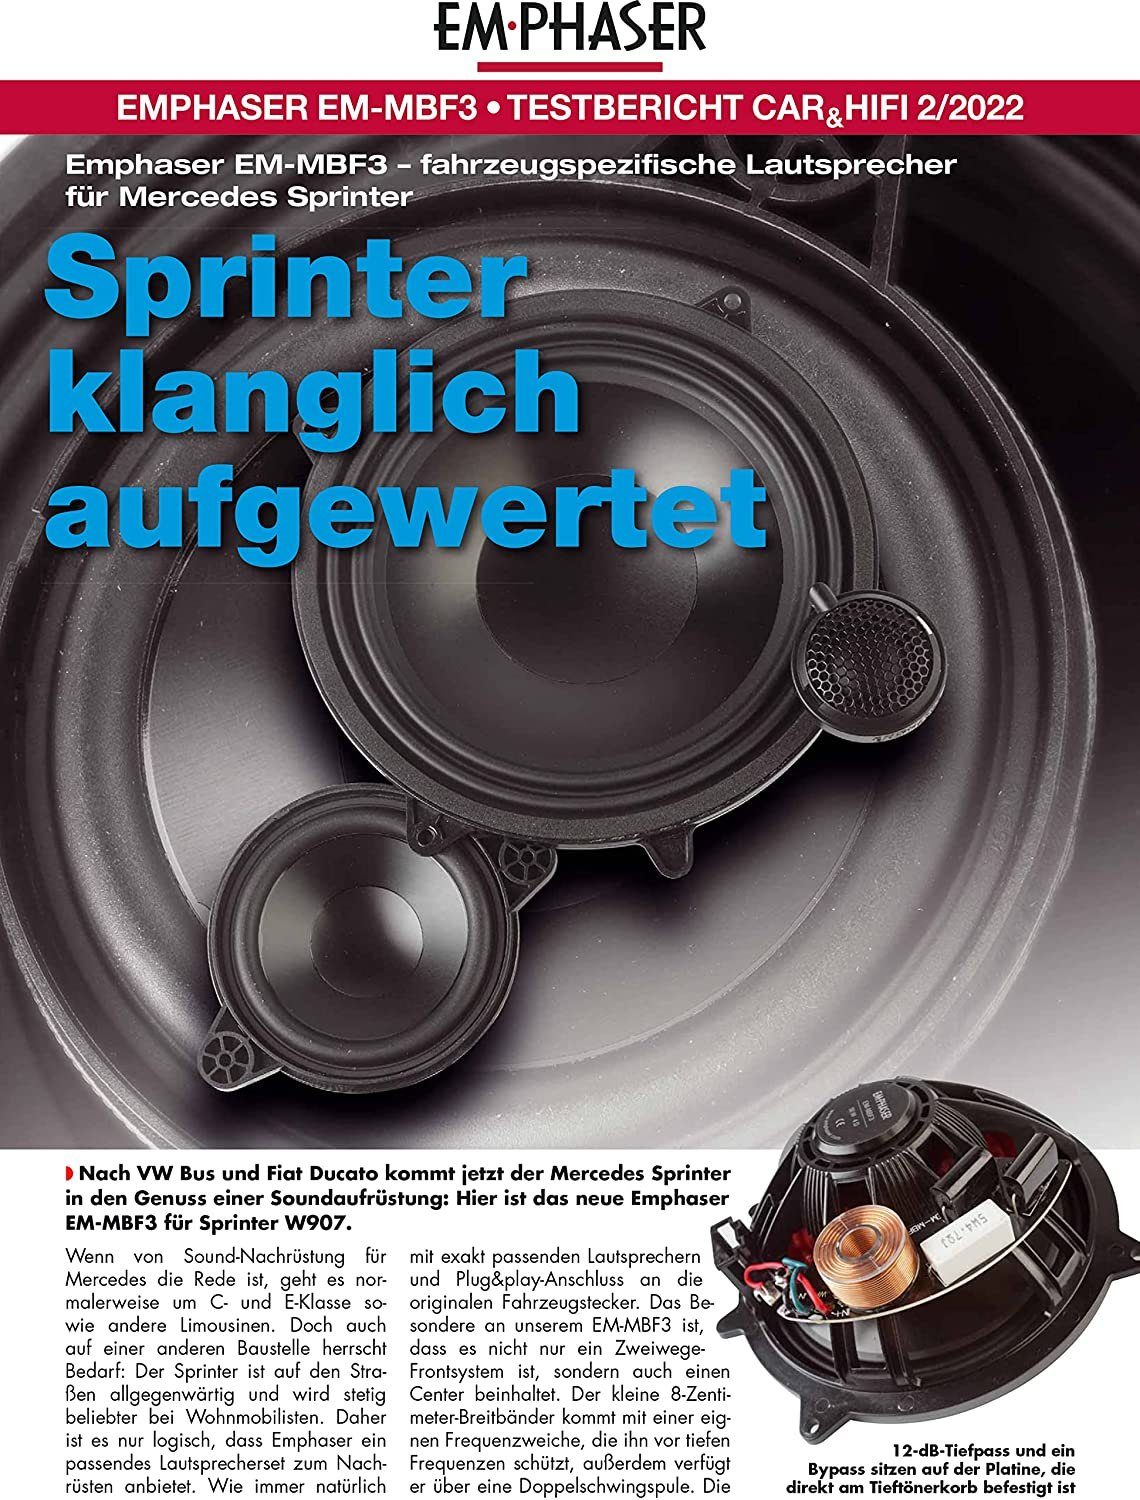 Auto-Lautsprecher Mercedes MBF3 für EmPhaser Sprinter 2.1 Emphaser Lautsprecher